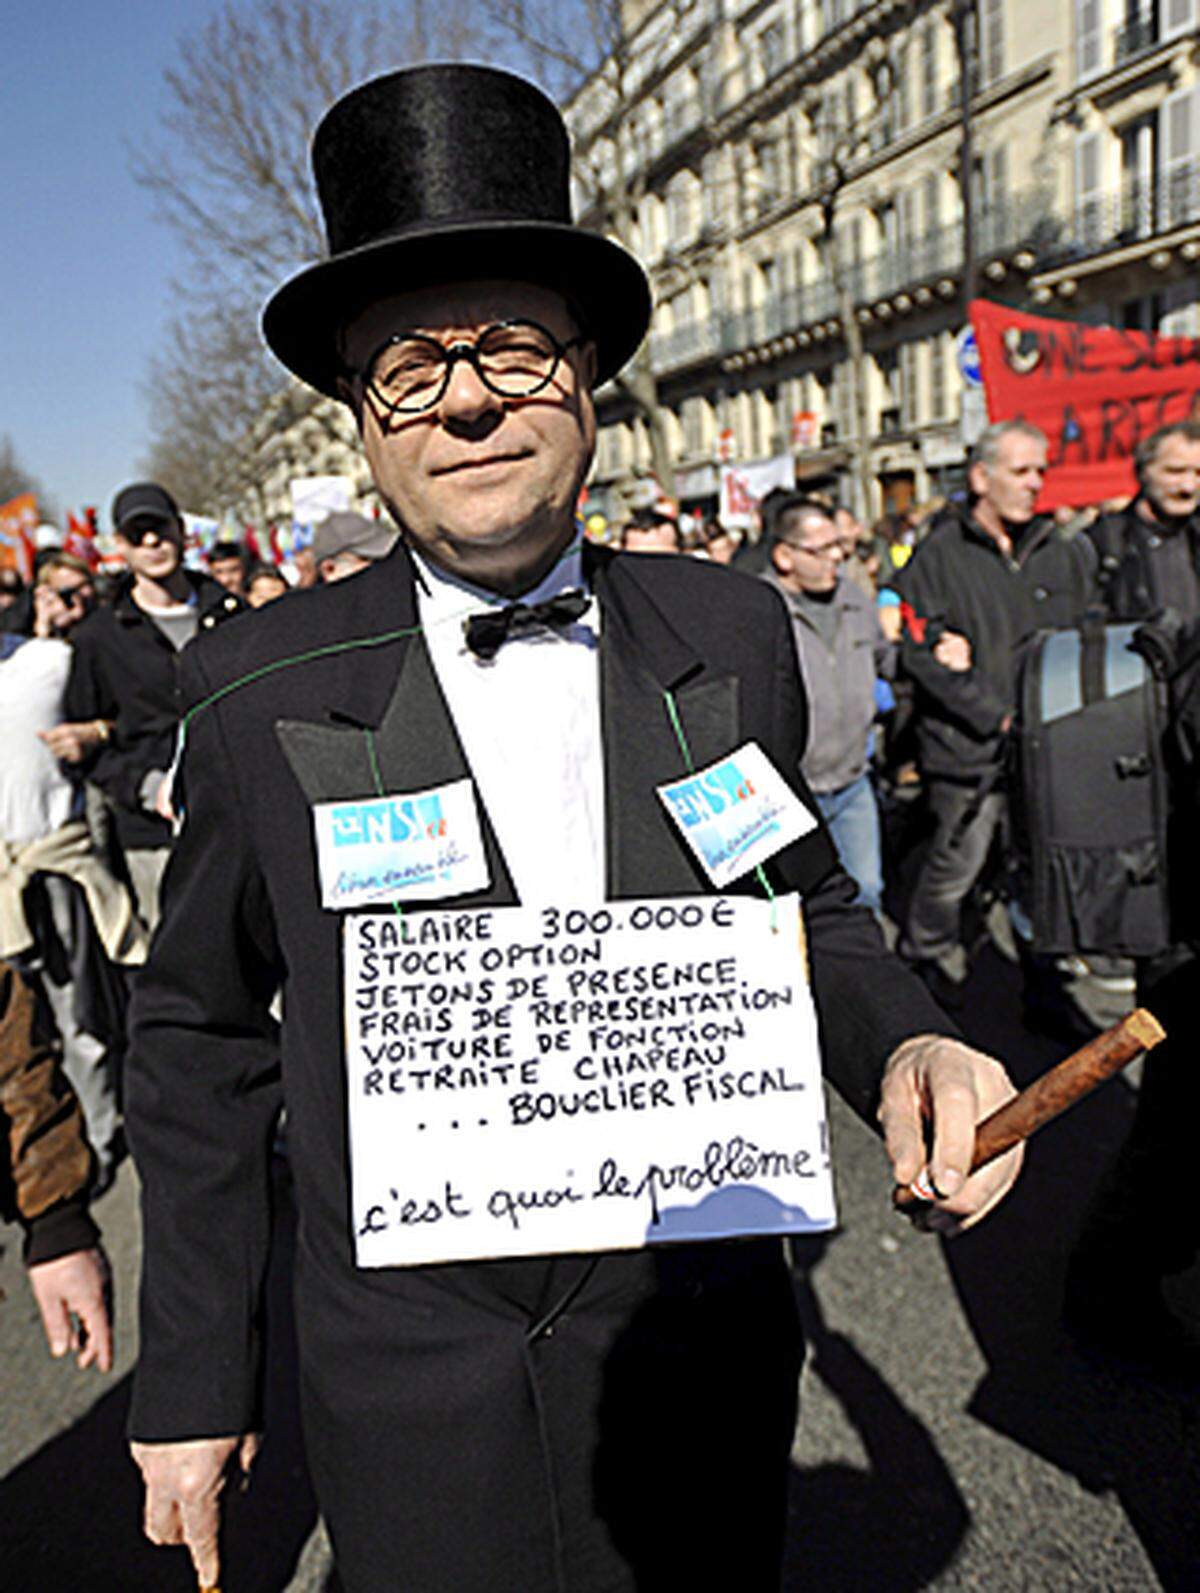 Umfragen zufolge unterstützen drei Viertel der Franzosen die Proteste, was die wachsende Enttäuschung der Bevölkerung über Sarkozy widerspiegelt.